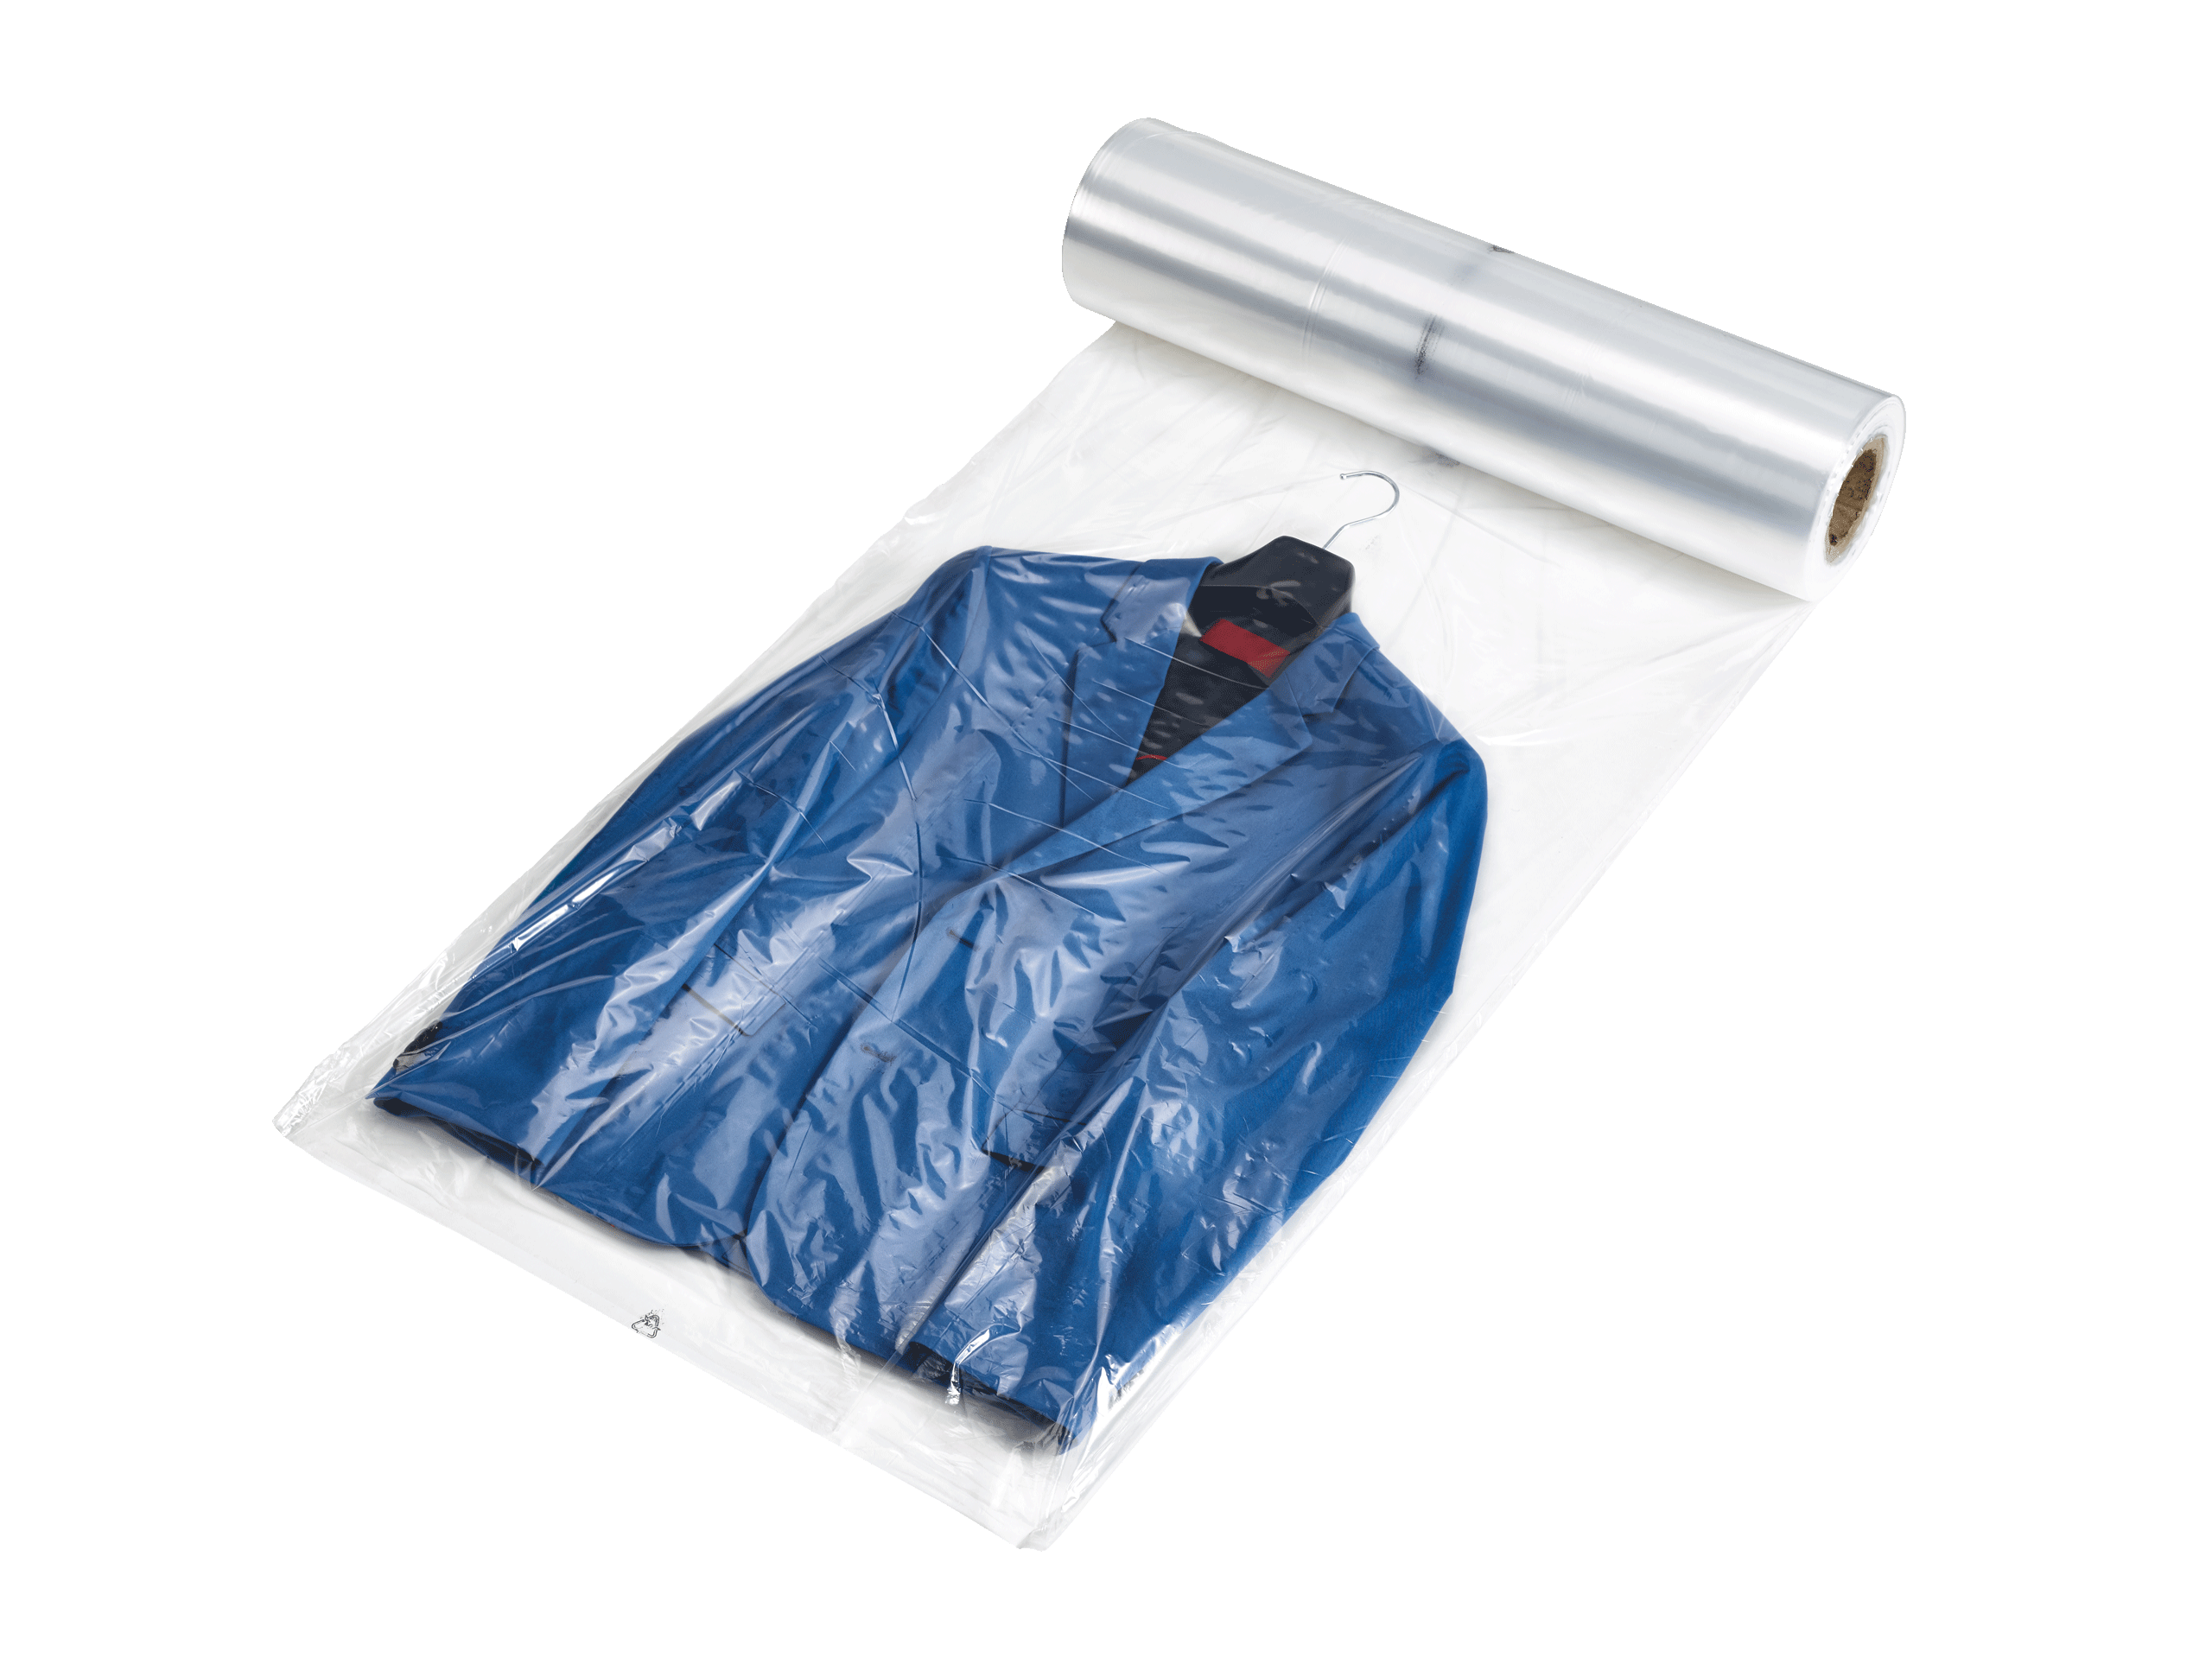 Folientaschen für Textilien Stärke 38 µm 100 St&uu Einzelhandelsverpackung für Kleidung selbstklebend  Größe S transparenter Kunststoff mit Sicherheitshinweis  Polypropylen 250 x 300 mm 